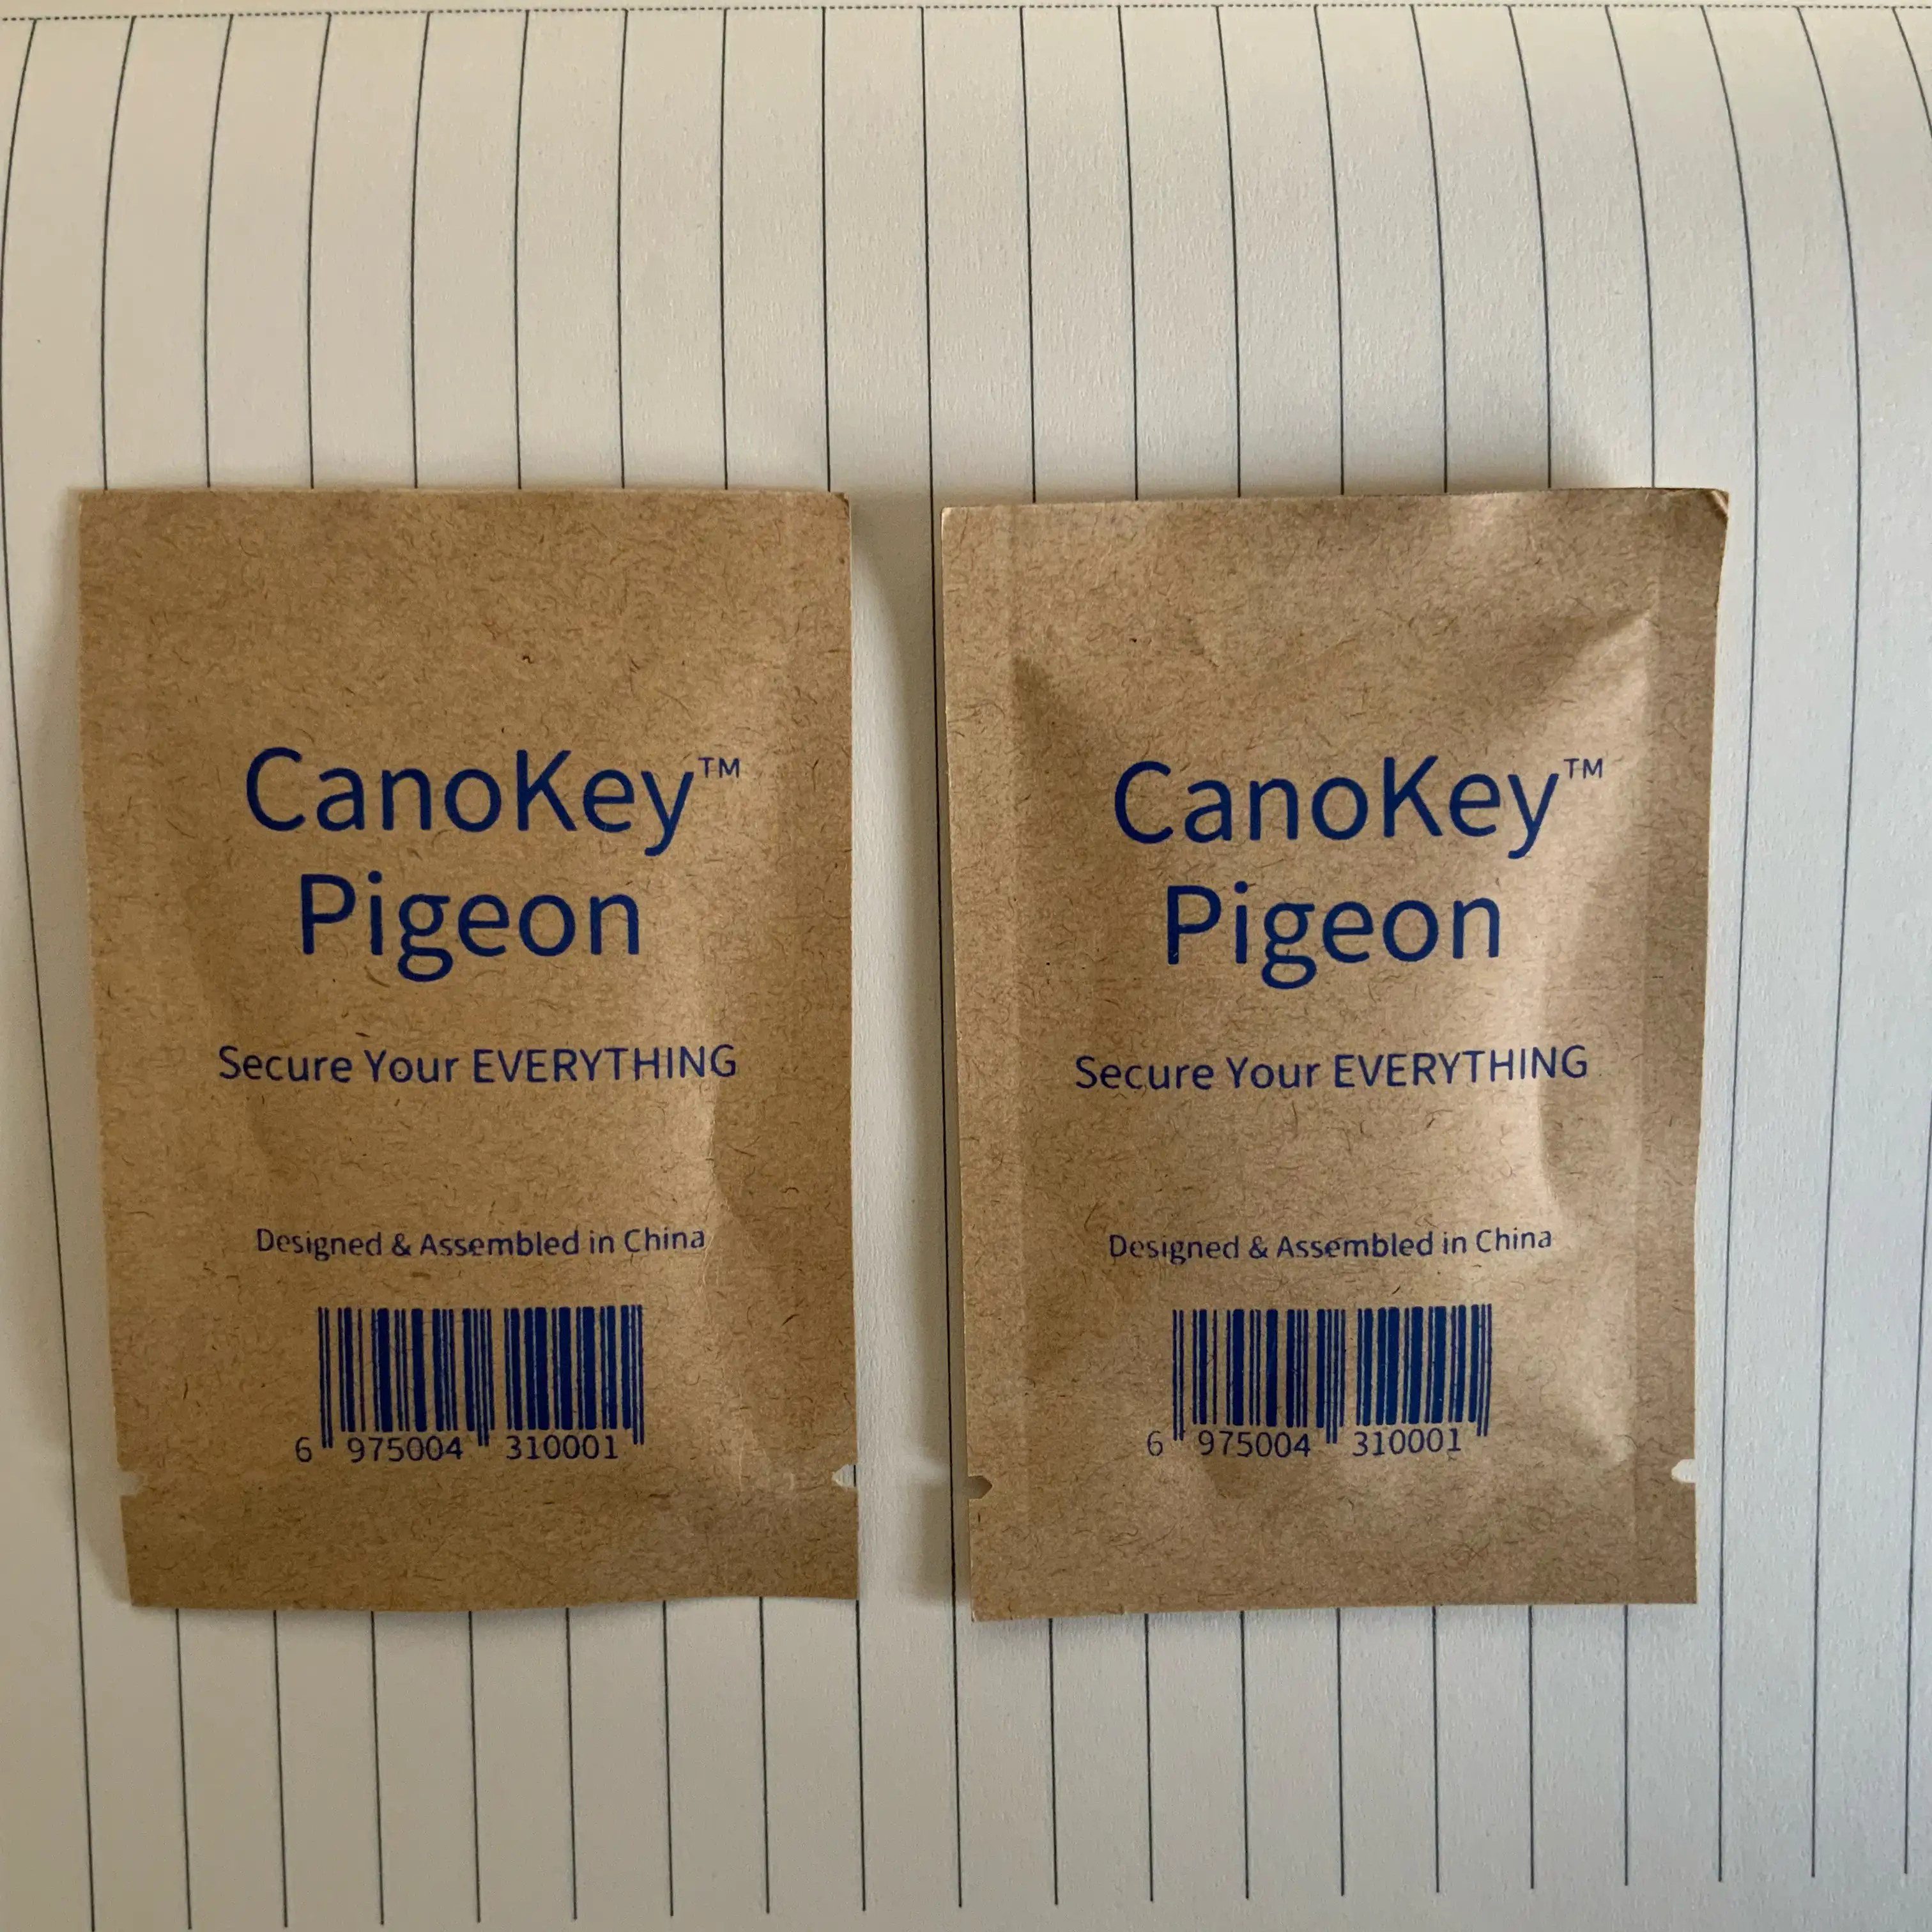 Canokey Pigeon